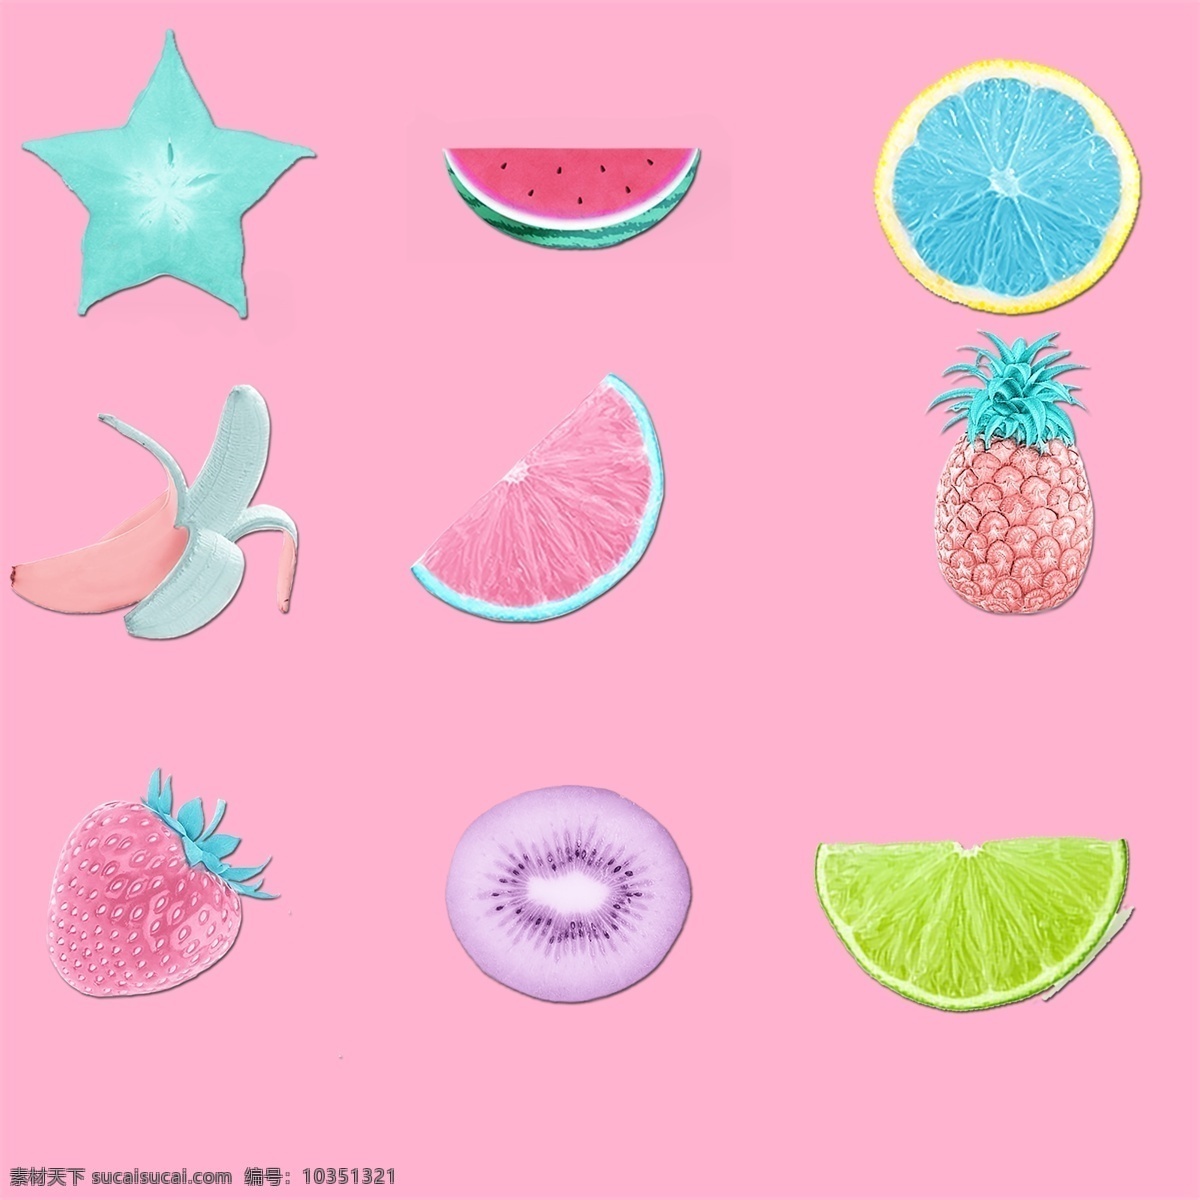 魔性 水果 装饰 图案 草莓 菠萝 五角星 装饰元素 冰淇淋色水果 可爱水果 变色水果 魔性水果